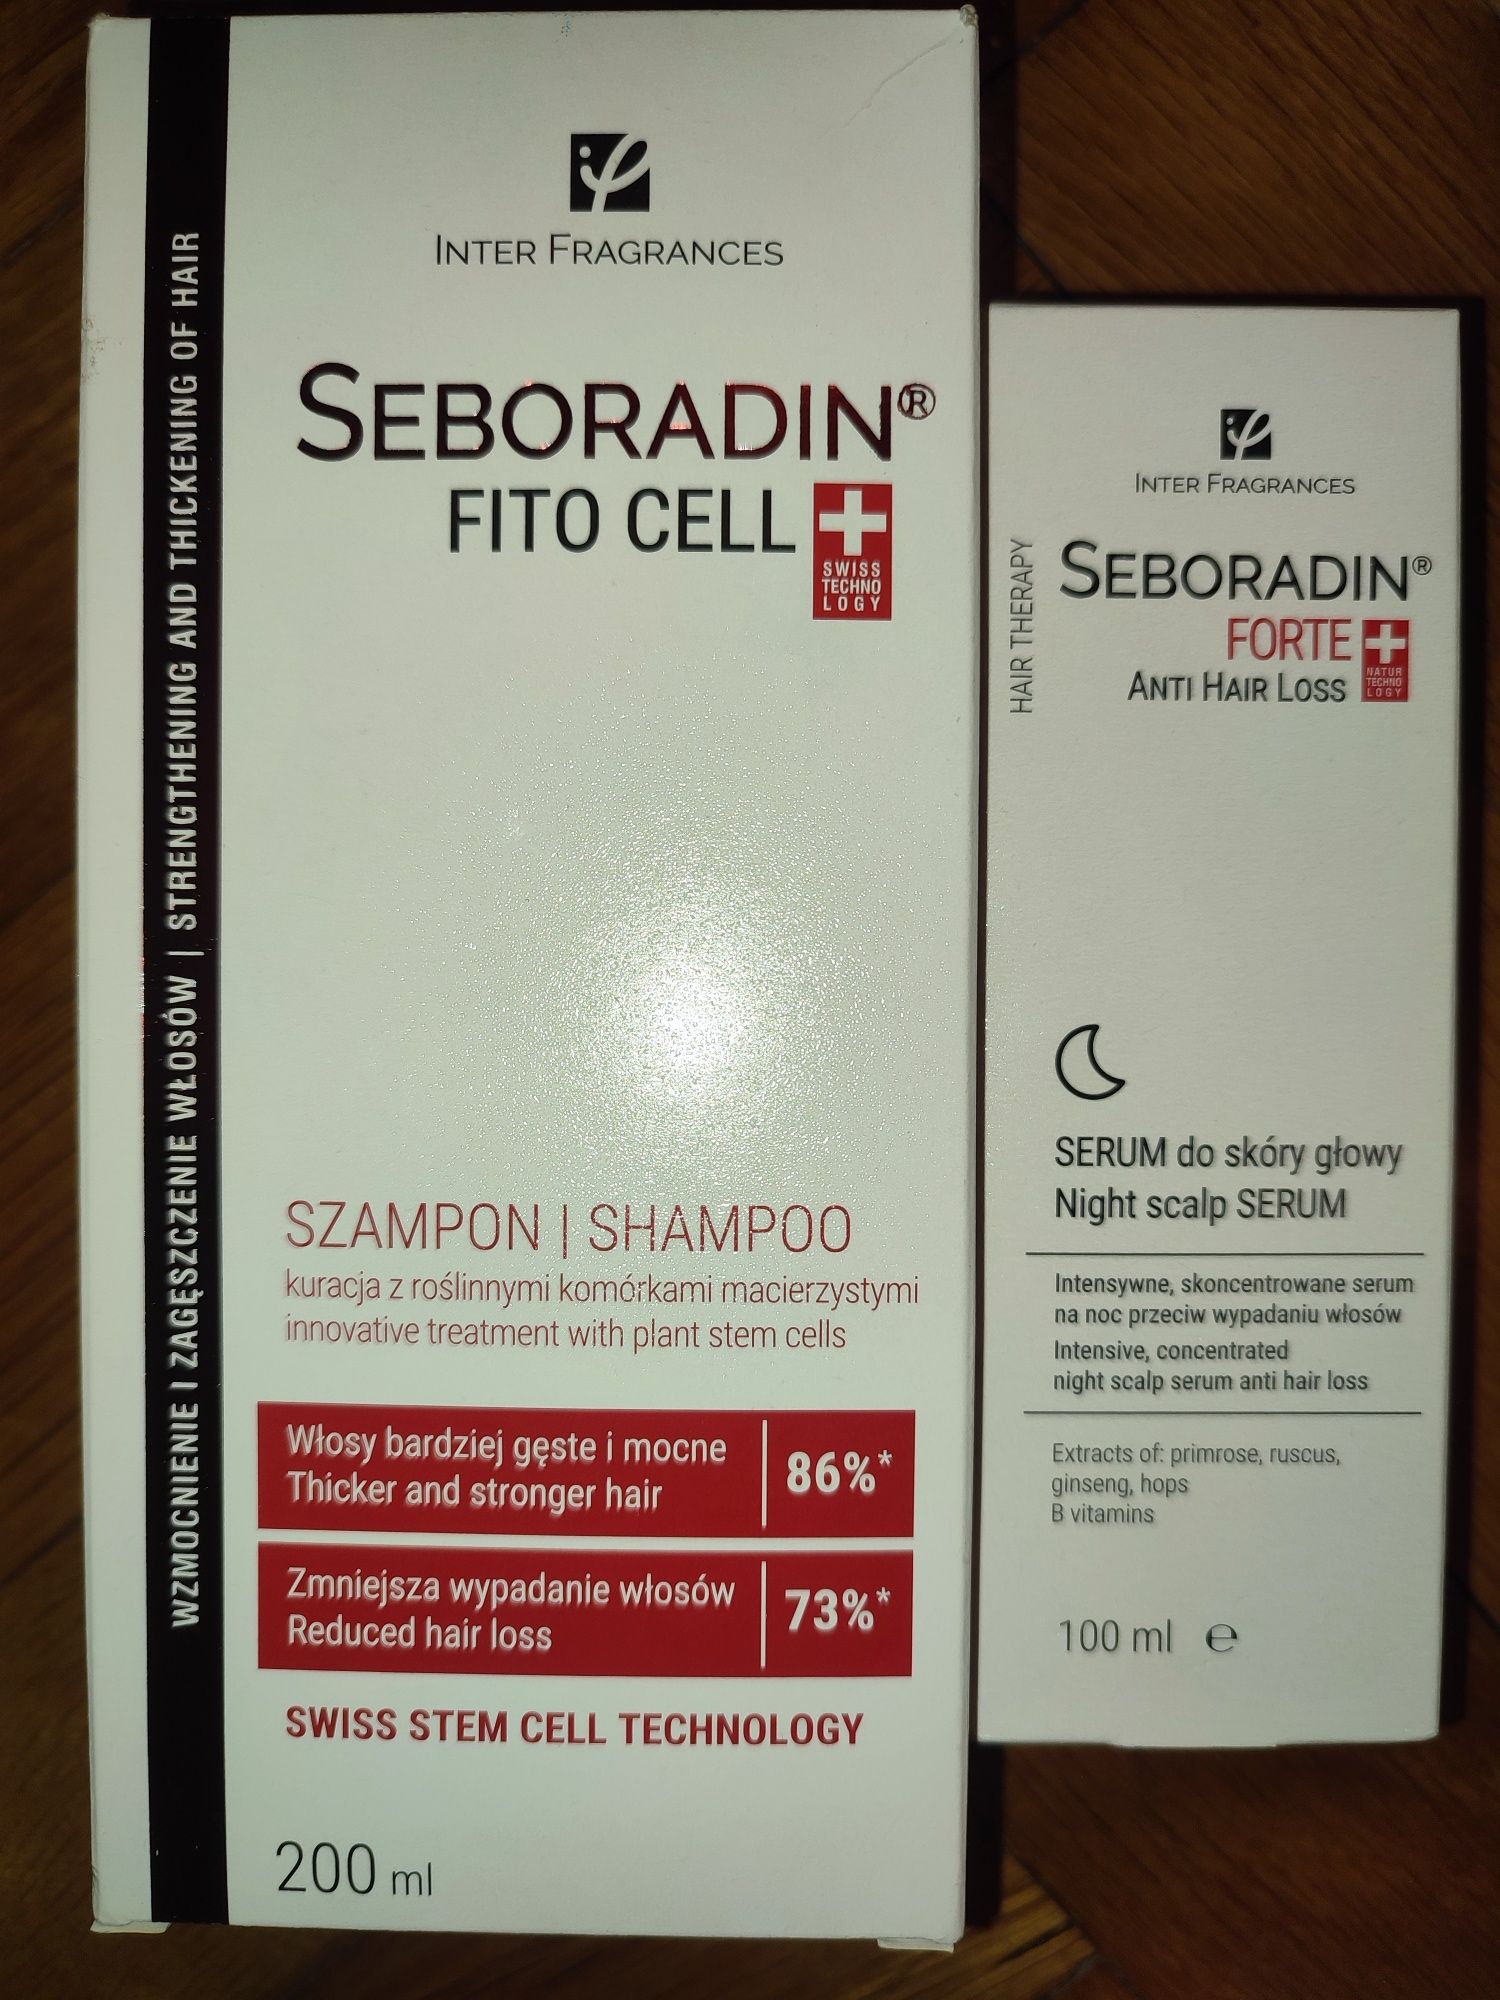 Seboradin forte serum i szampon fito cell przeciw wypadaniu włosów